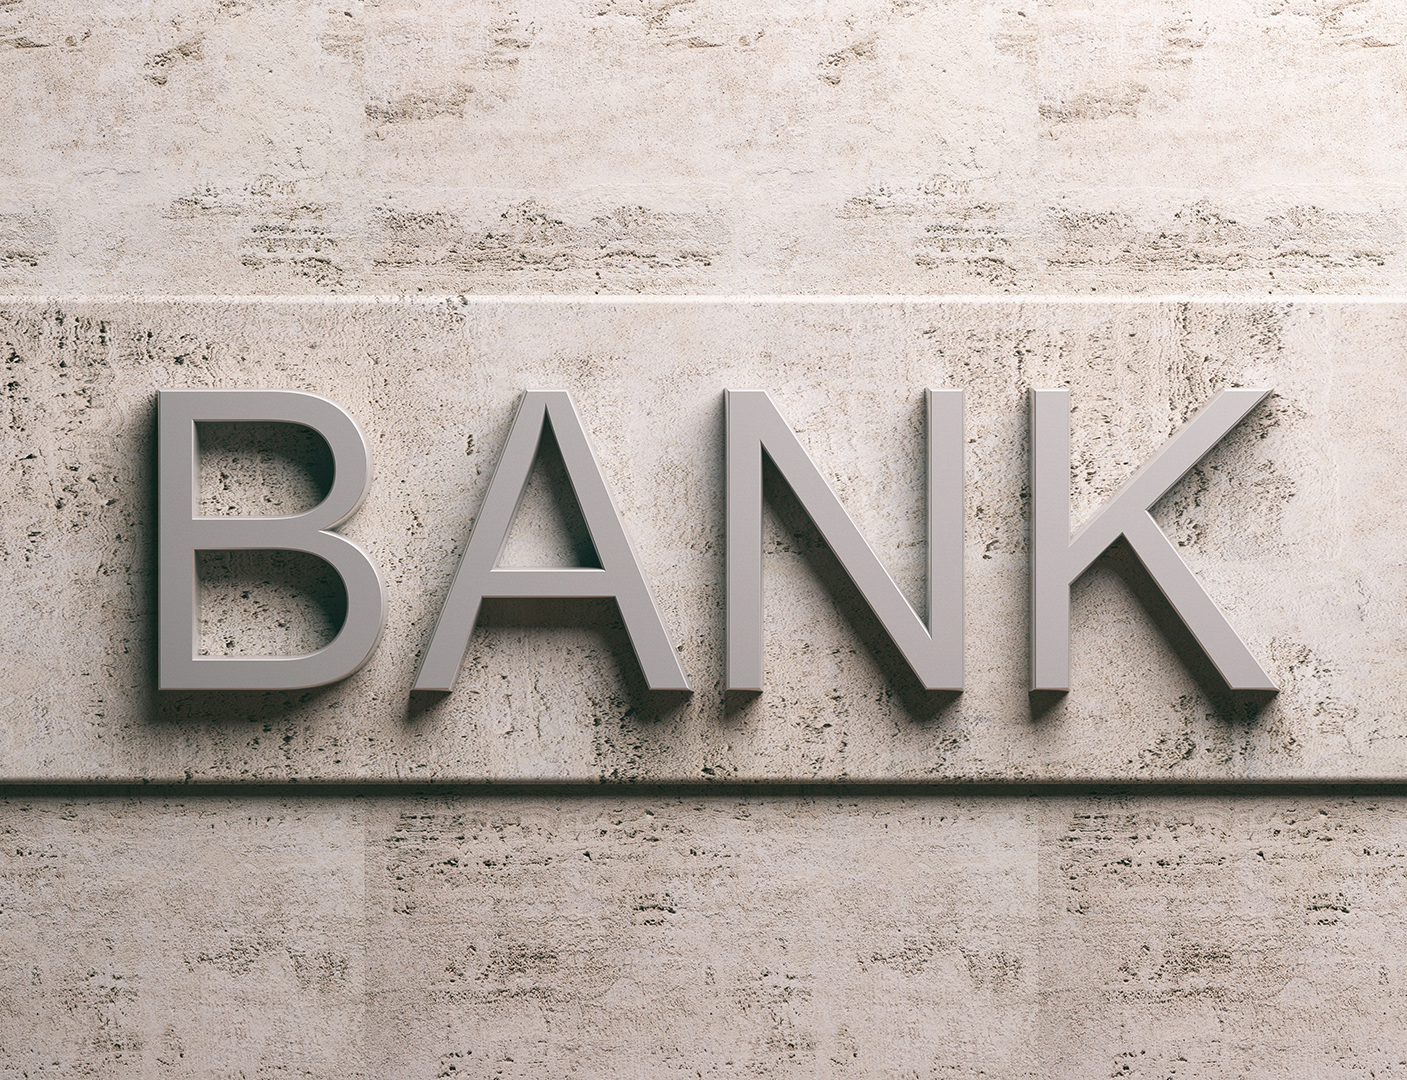 Νέα έξοδος στην ΝΑ Ευρώπη για τις ελληνικές τράπεζες